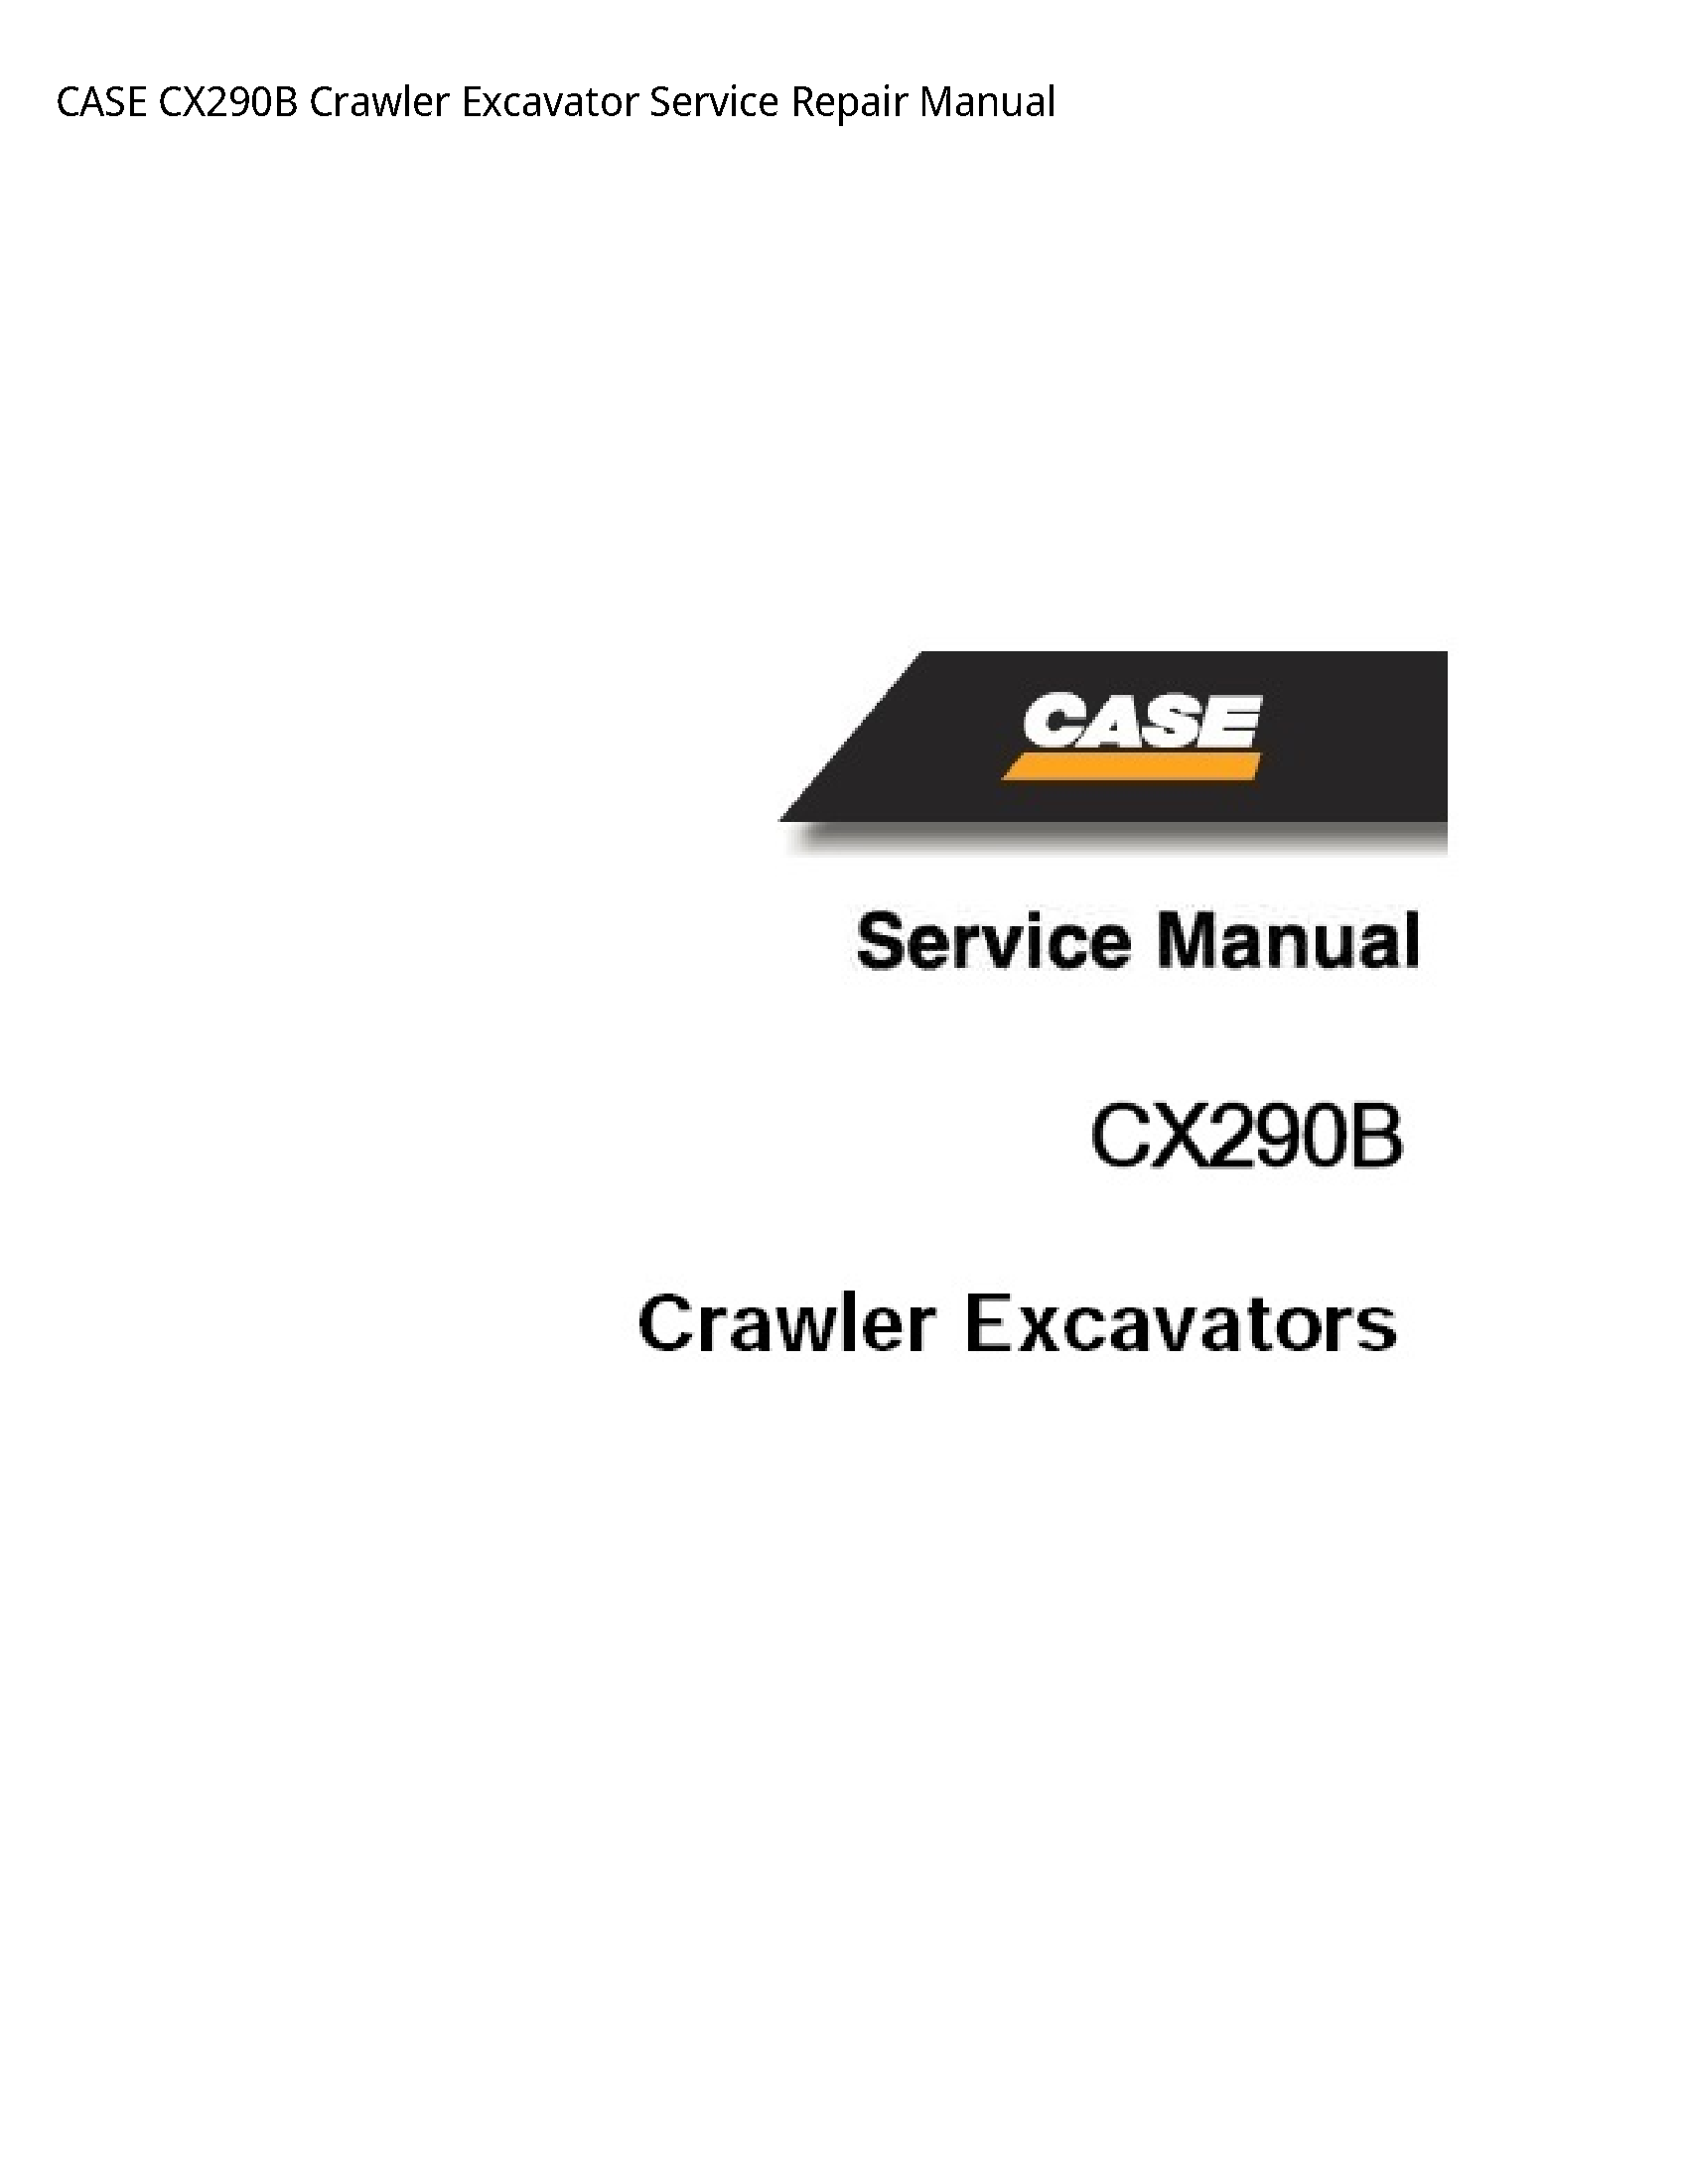 Case/Case IH CX290B Crawler Excavator manual